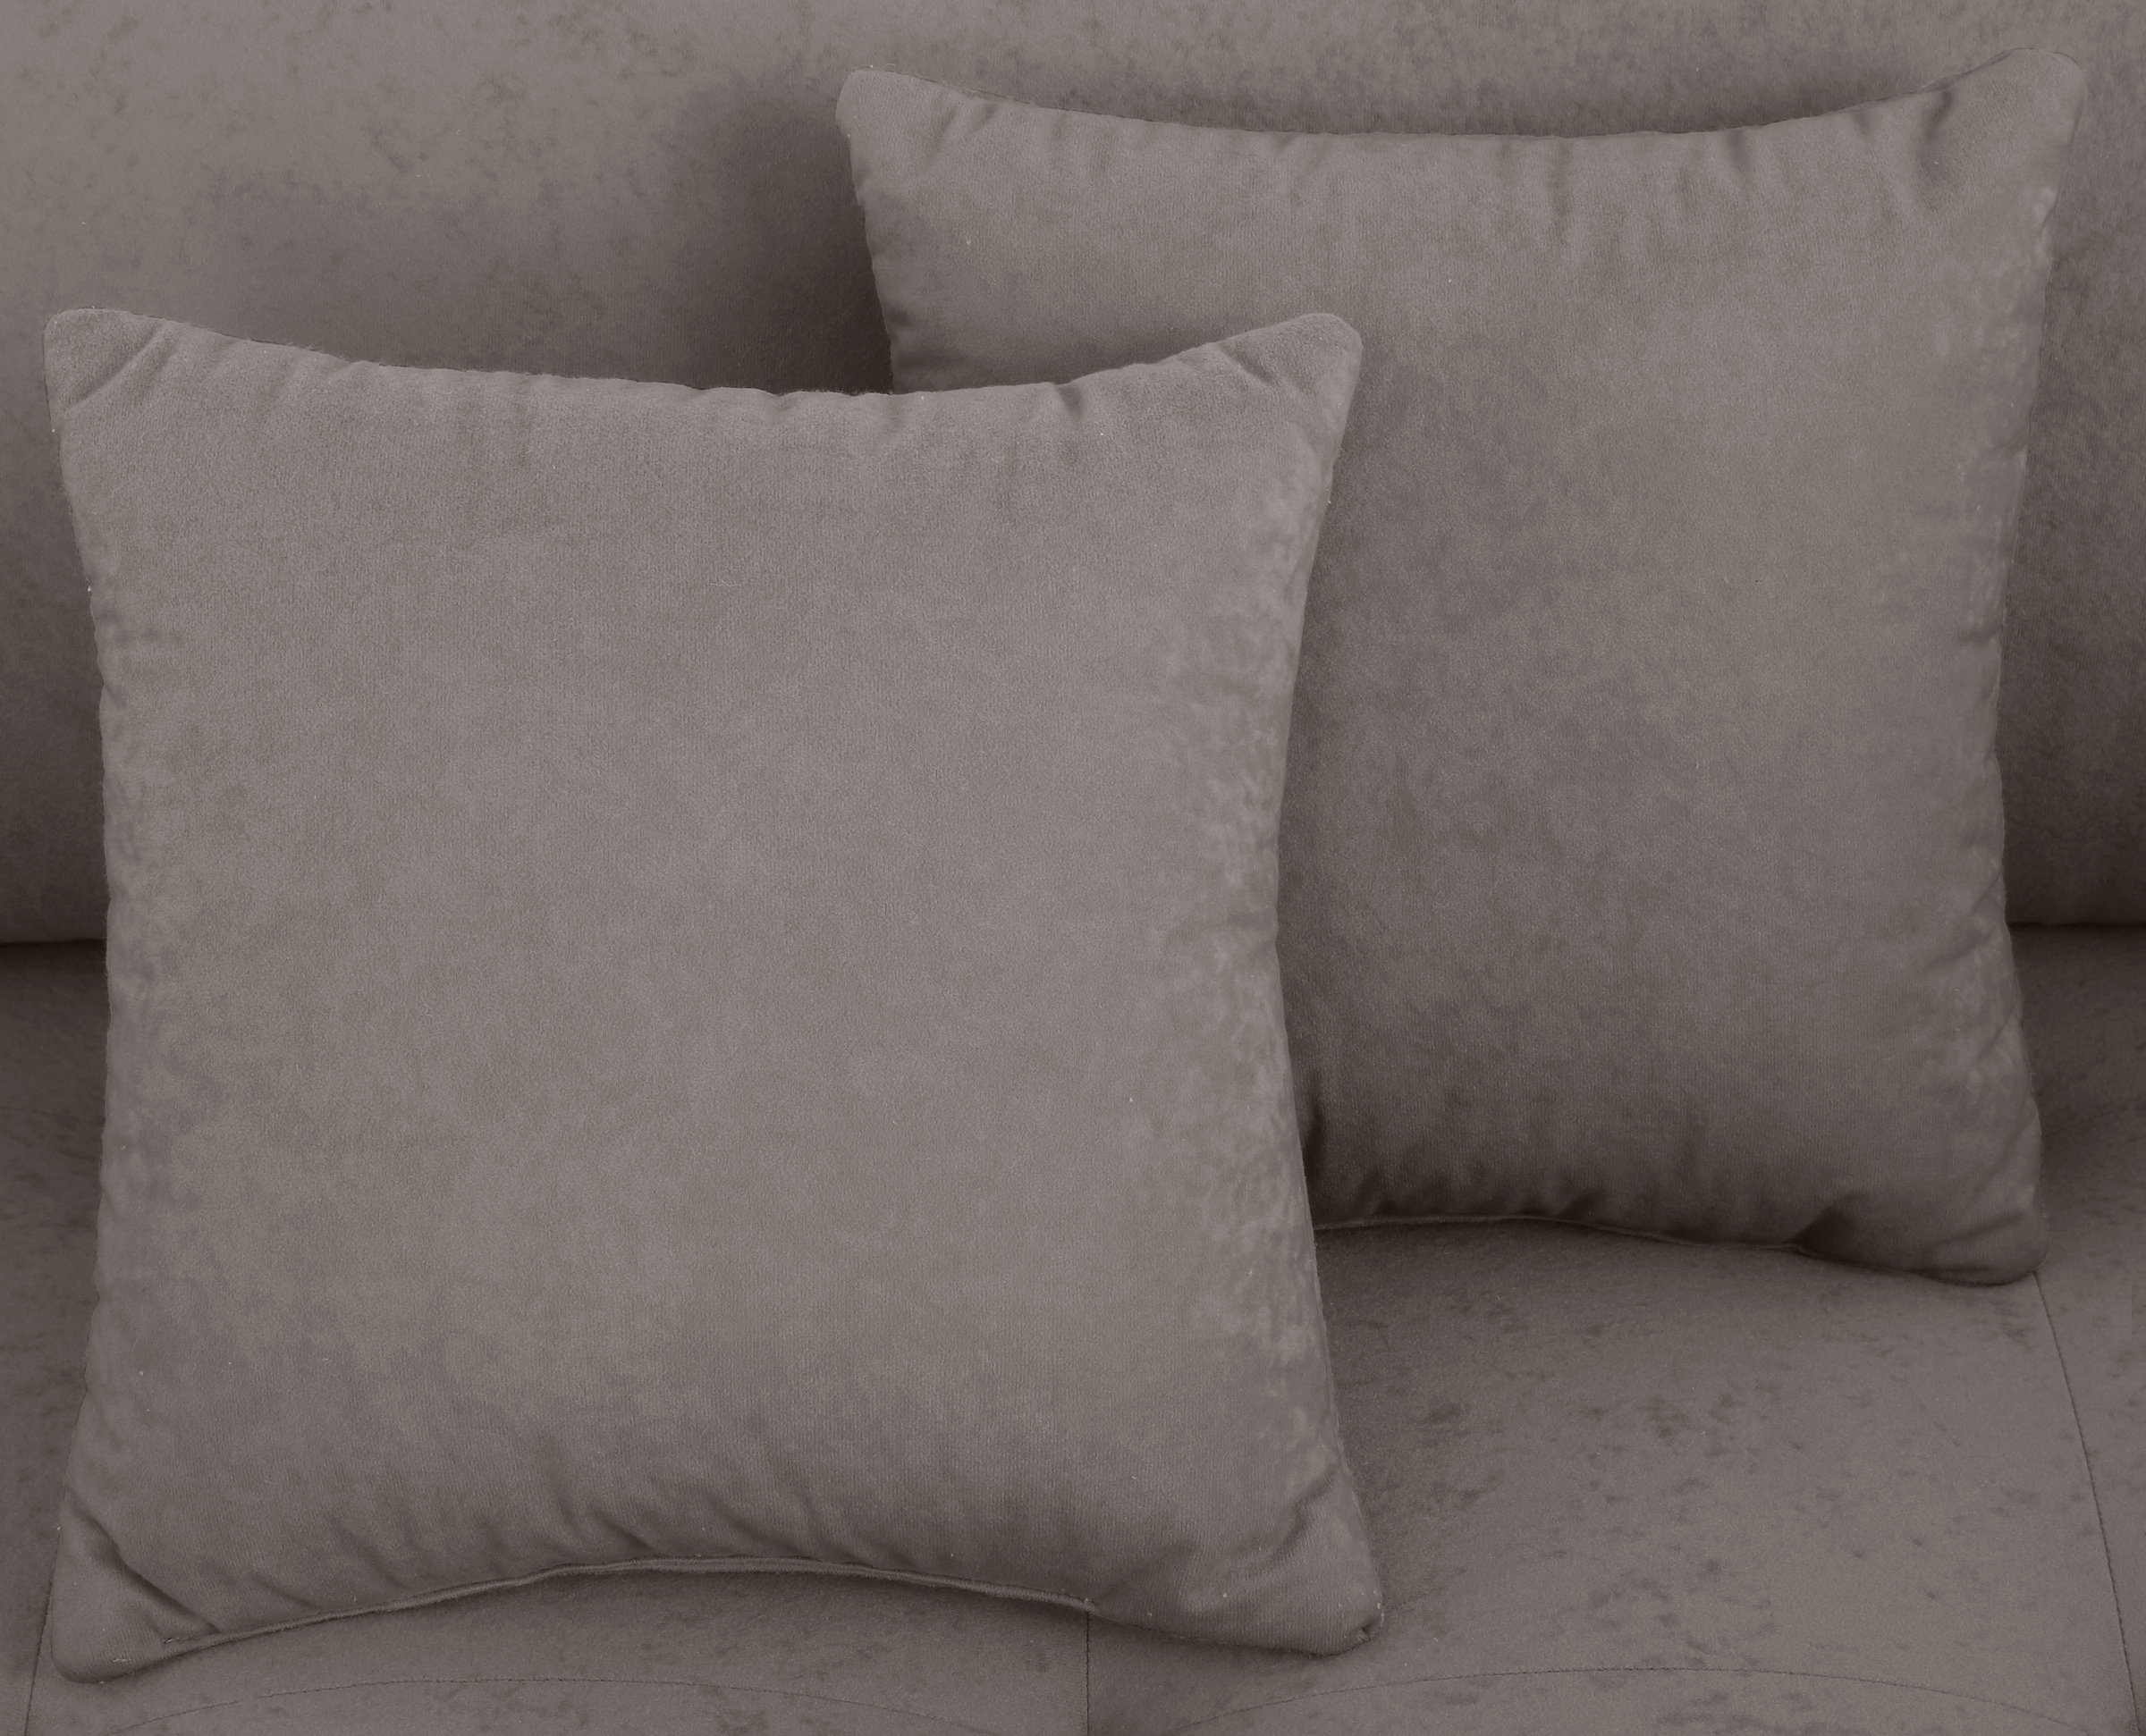 Home affaire Big-Sofa »Penelope Luxus«, mit besonders hochwertiger Polsterung für bis zu 140 kg pro Sitzfläche